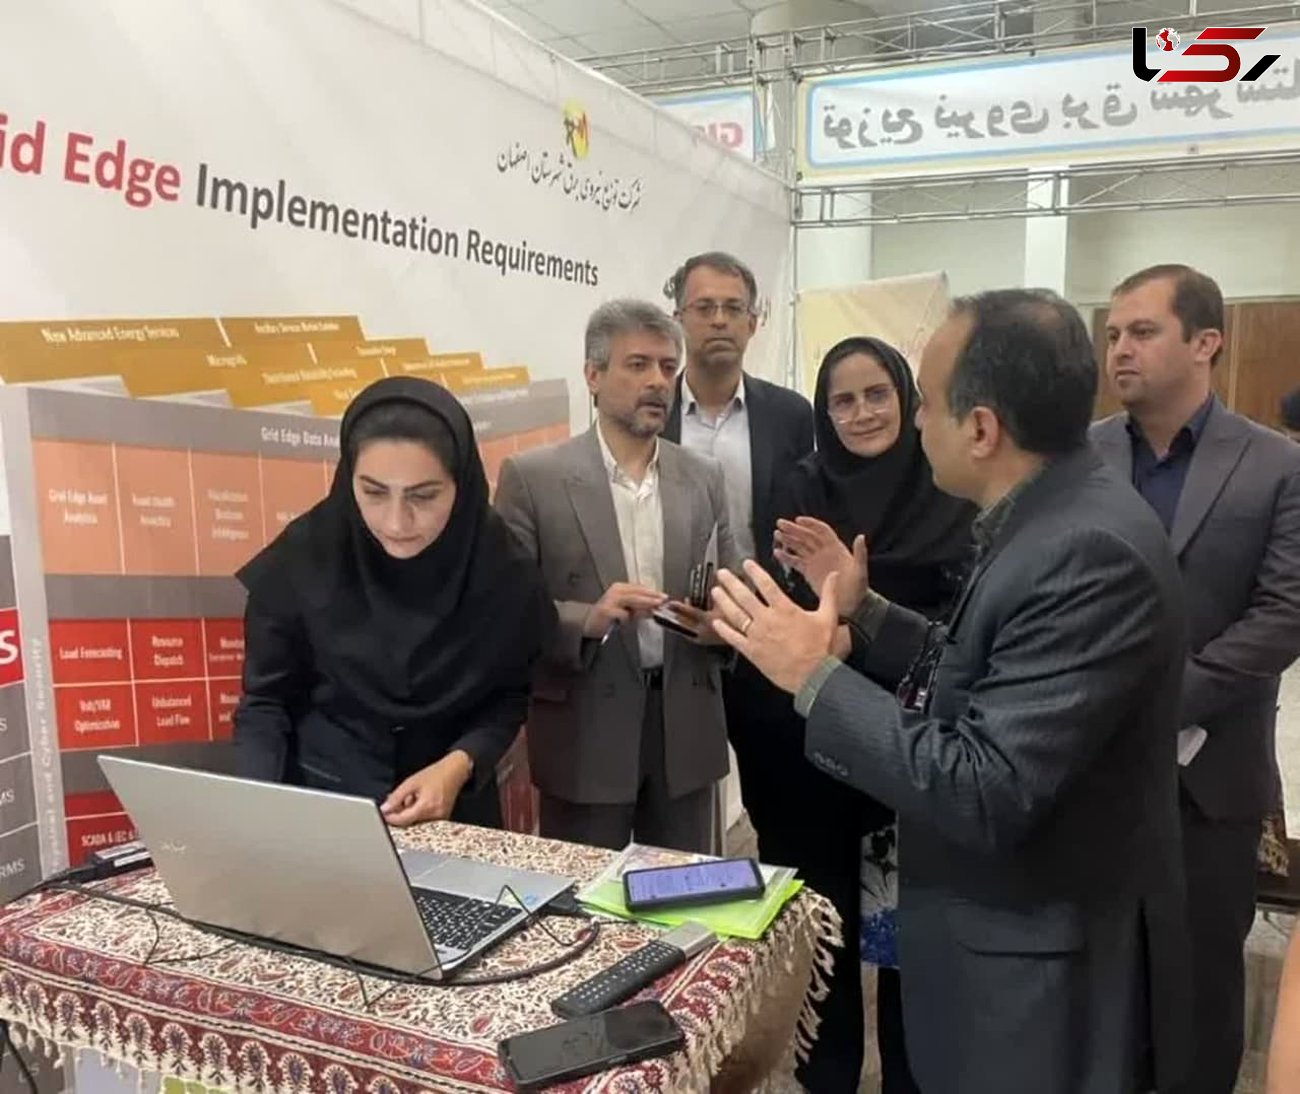 تقدیر از شرکت توزیع برق شهرستان اصفهان بعنوان شرکت برتر ساخت در کنفرانس ملی GIS
